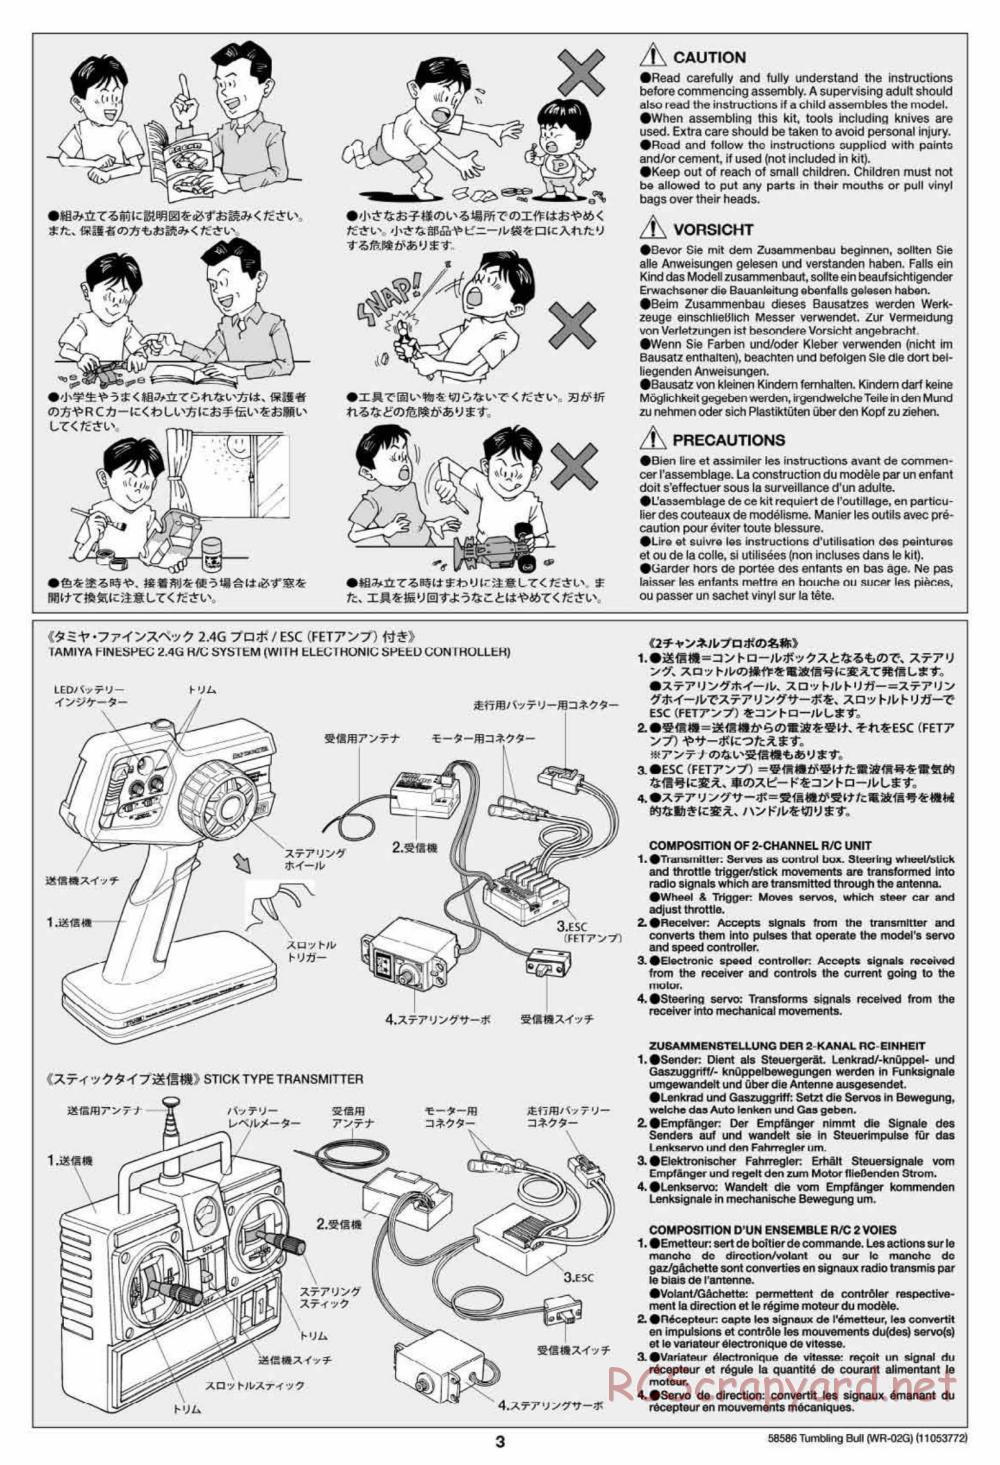 Tamiya - Tumbling Bull Chassis - Manual - Page 3